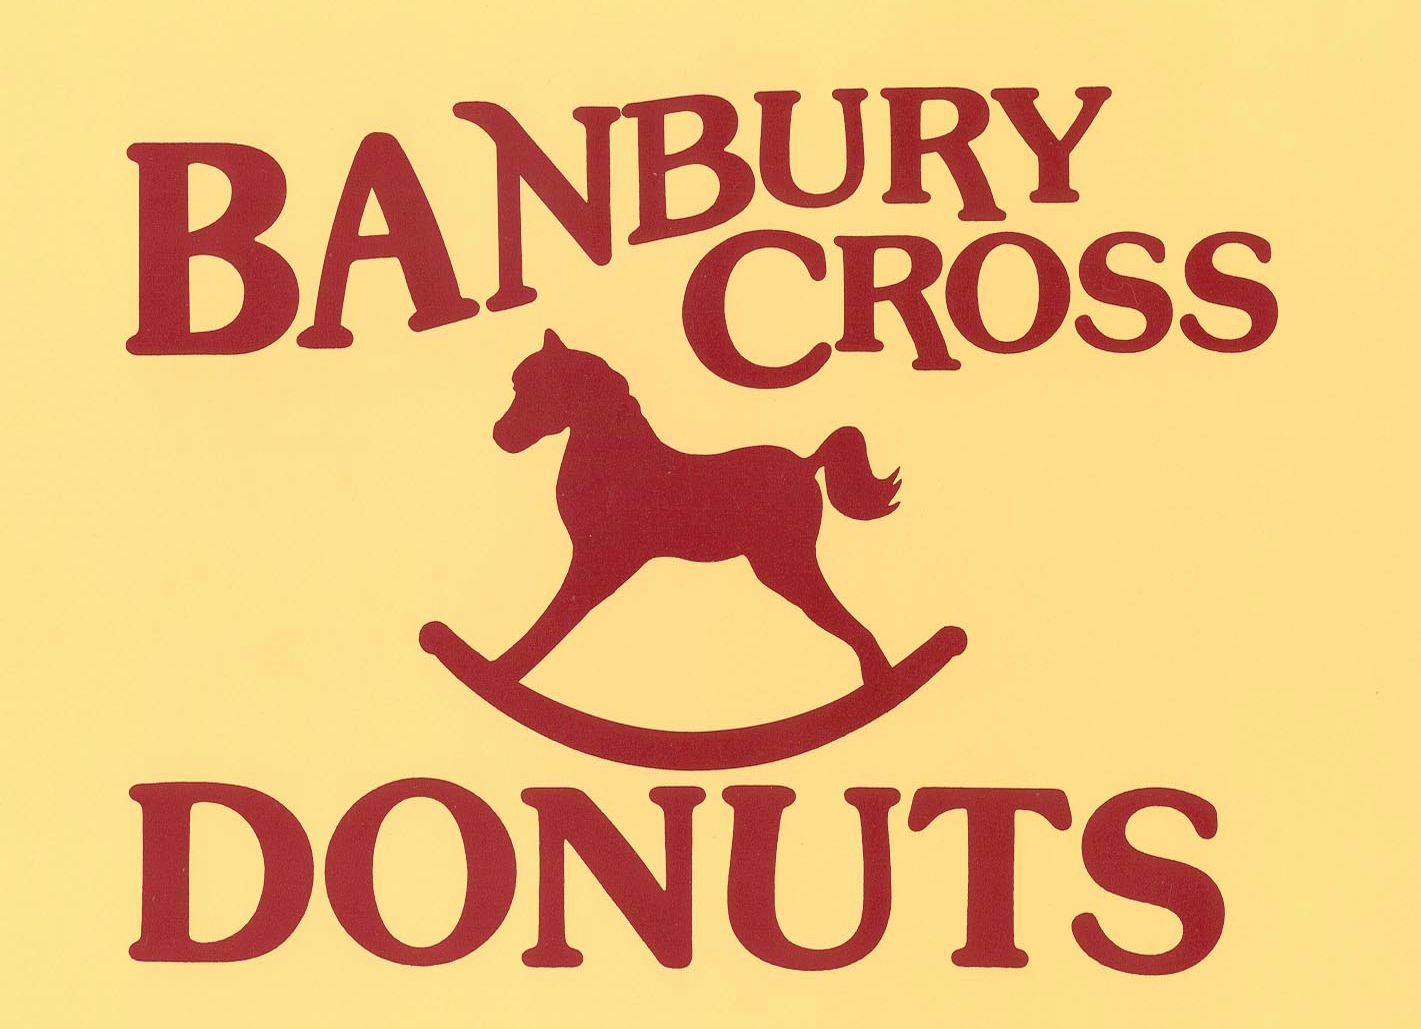 Banbury Cross boxtop2landscape